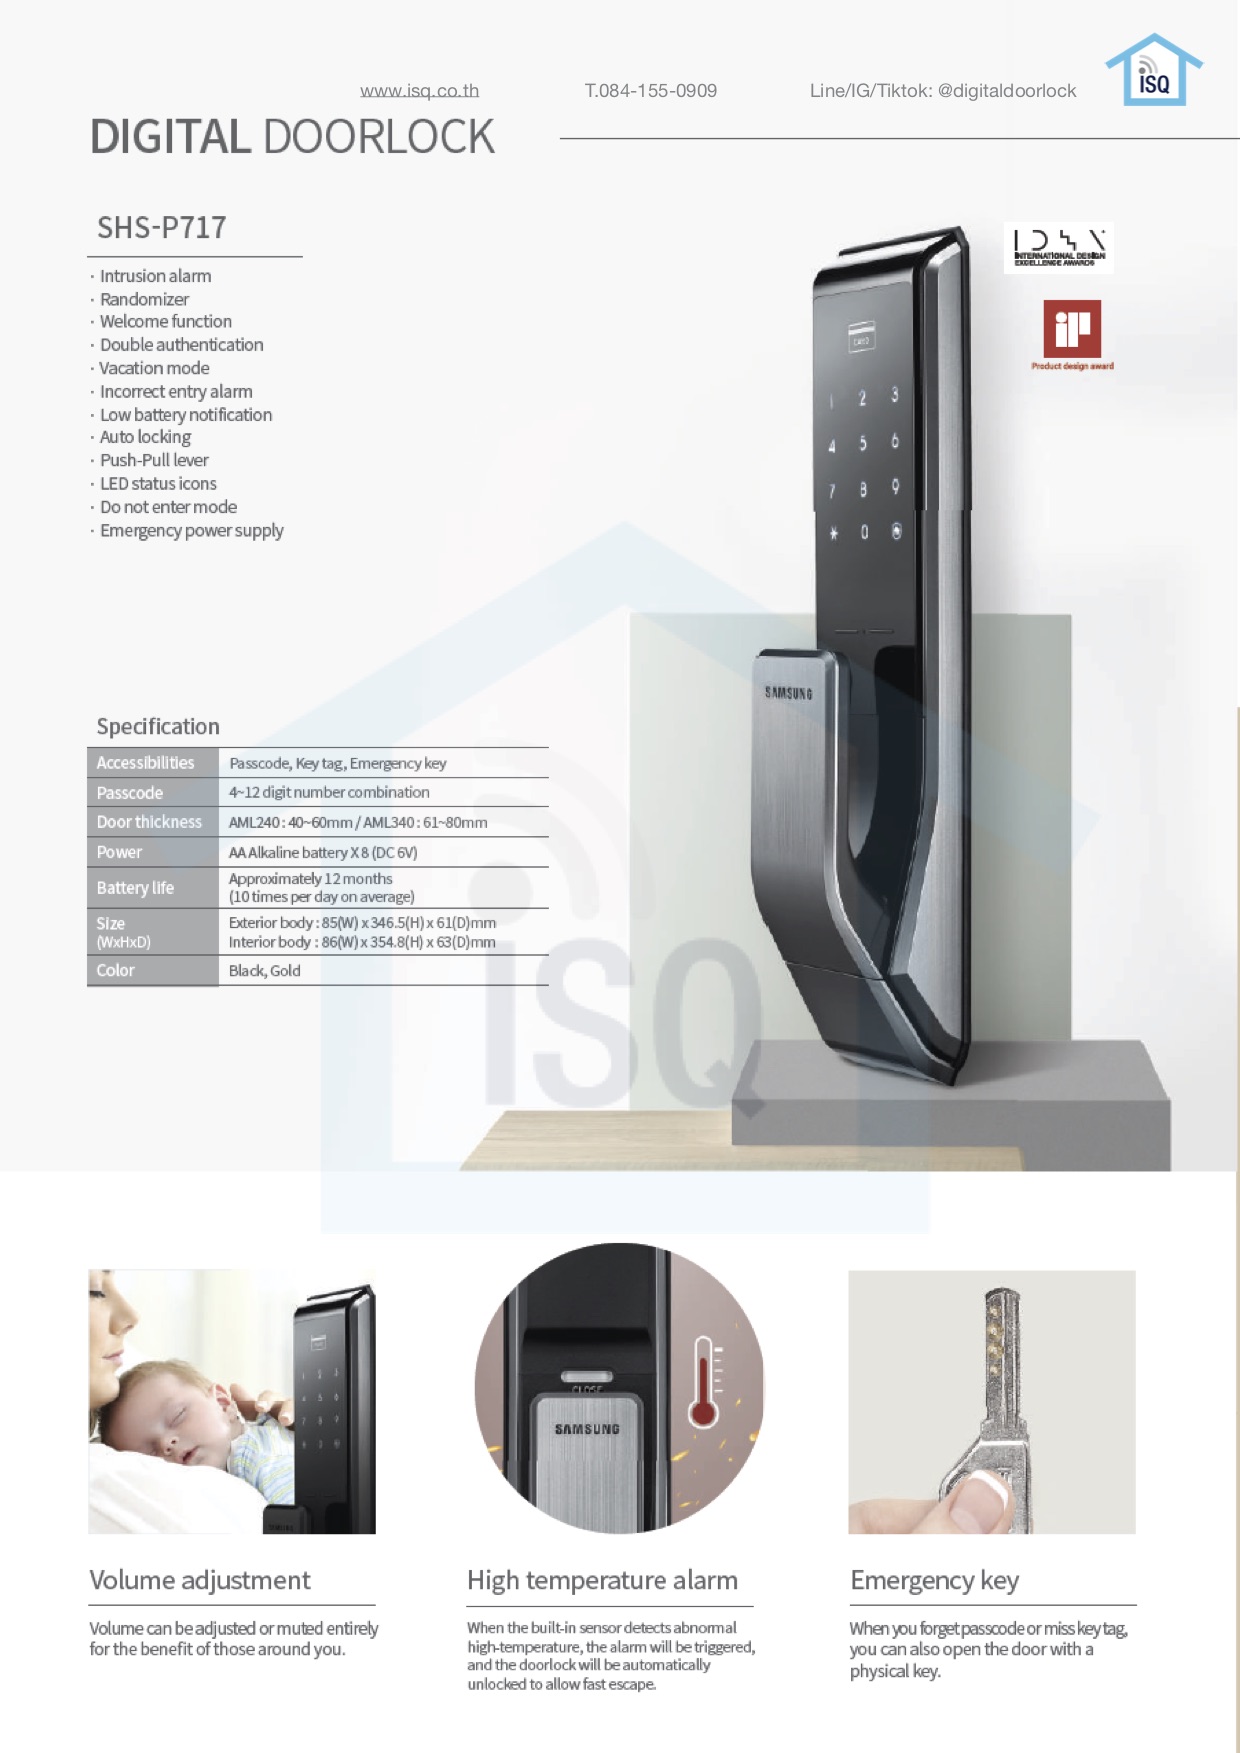 Samsung smart digital door lock SHP-DP718